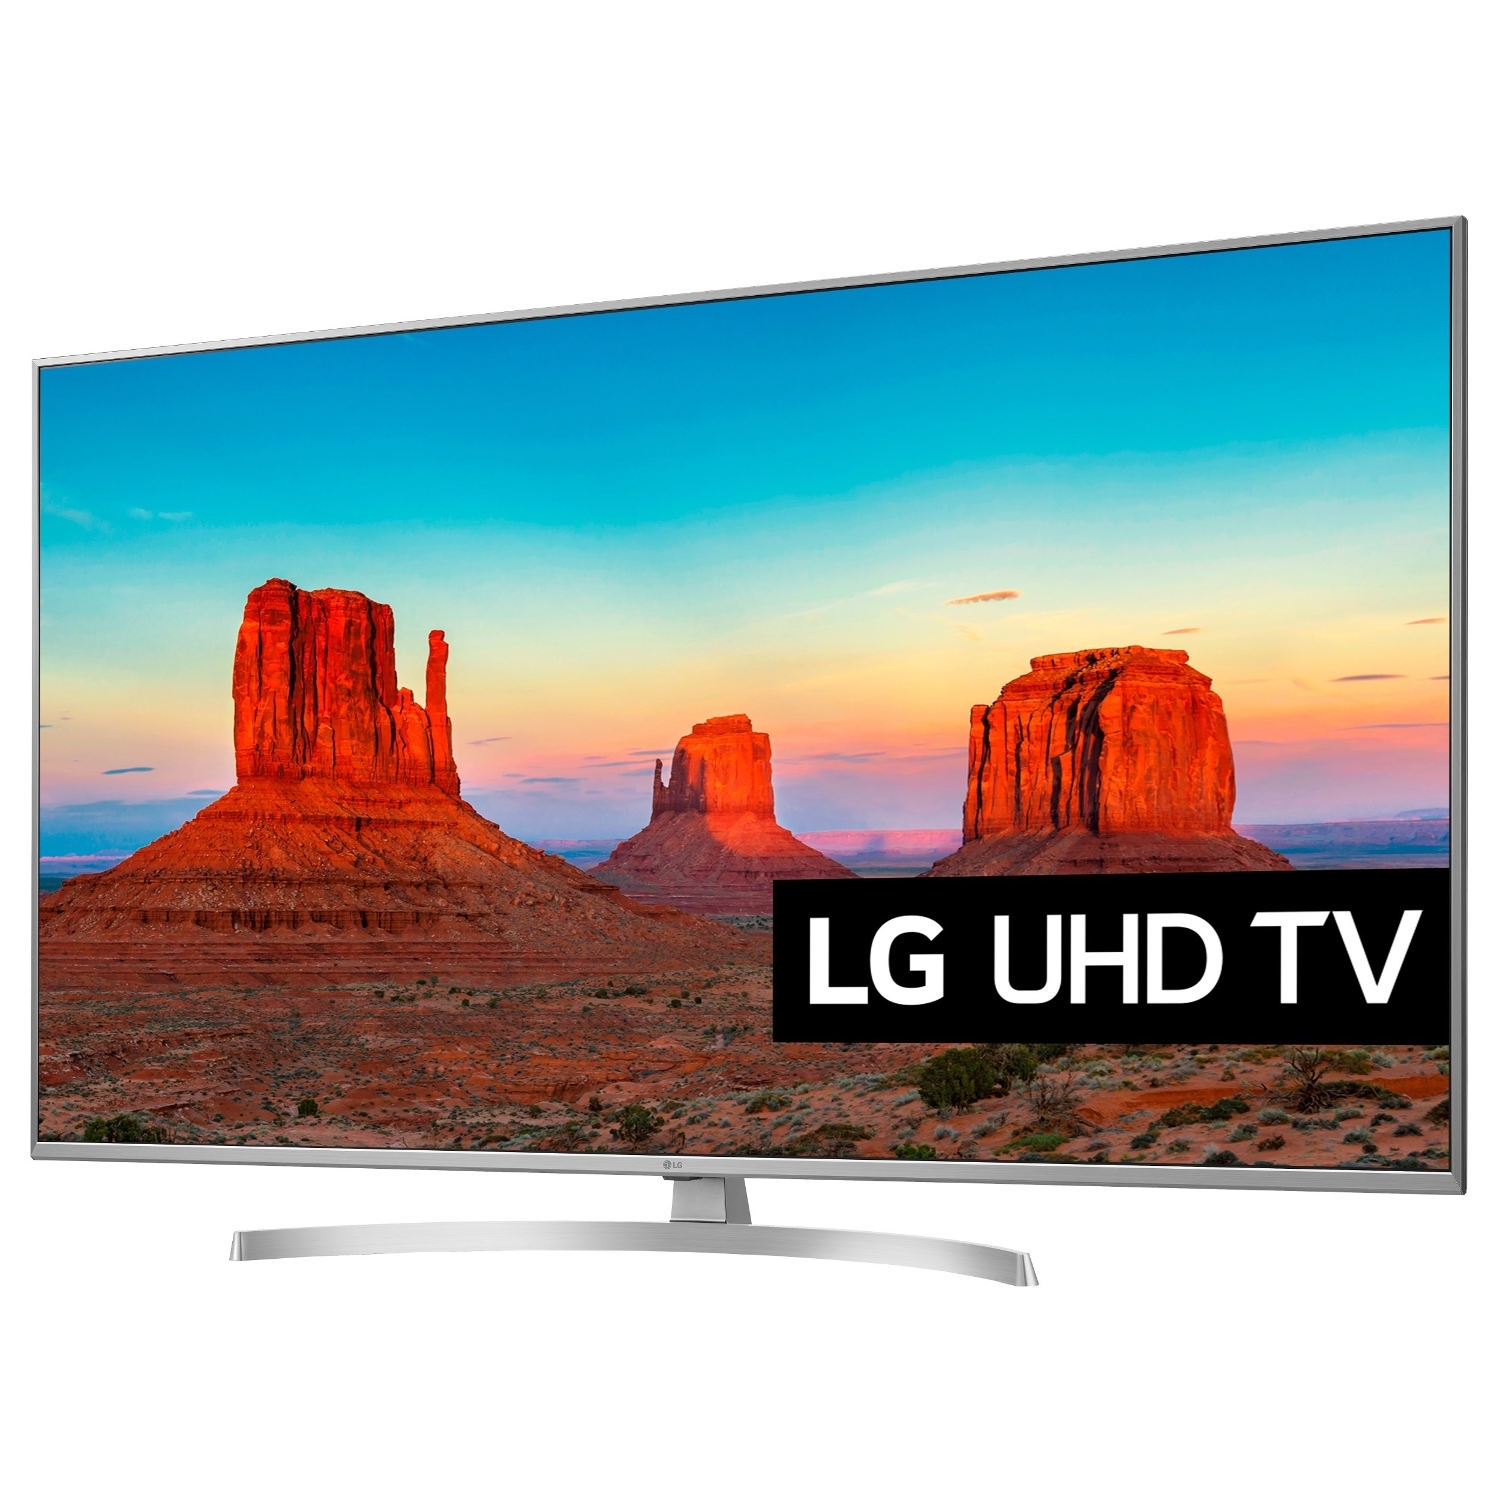 LG 49" UHD LED TV - 0